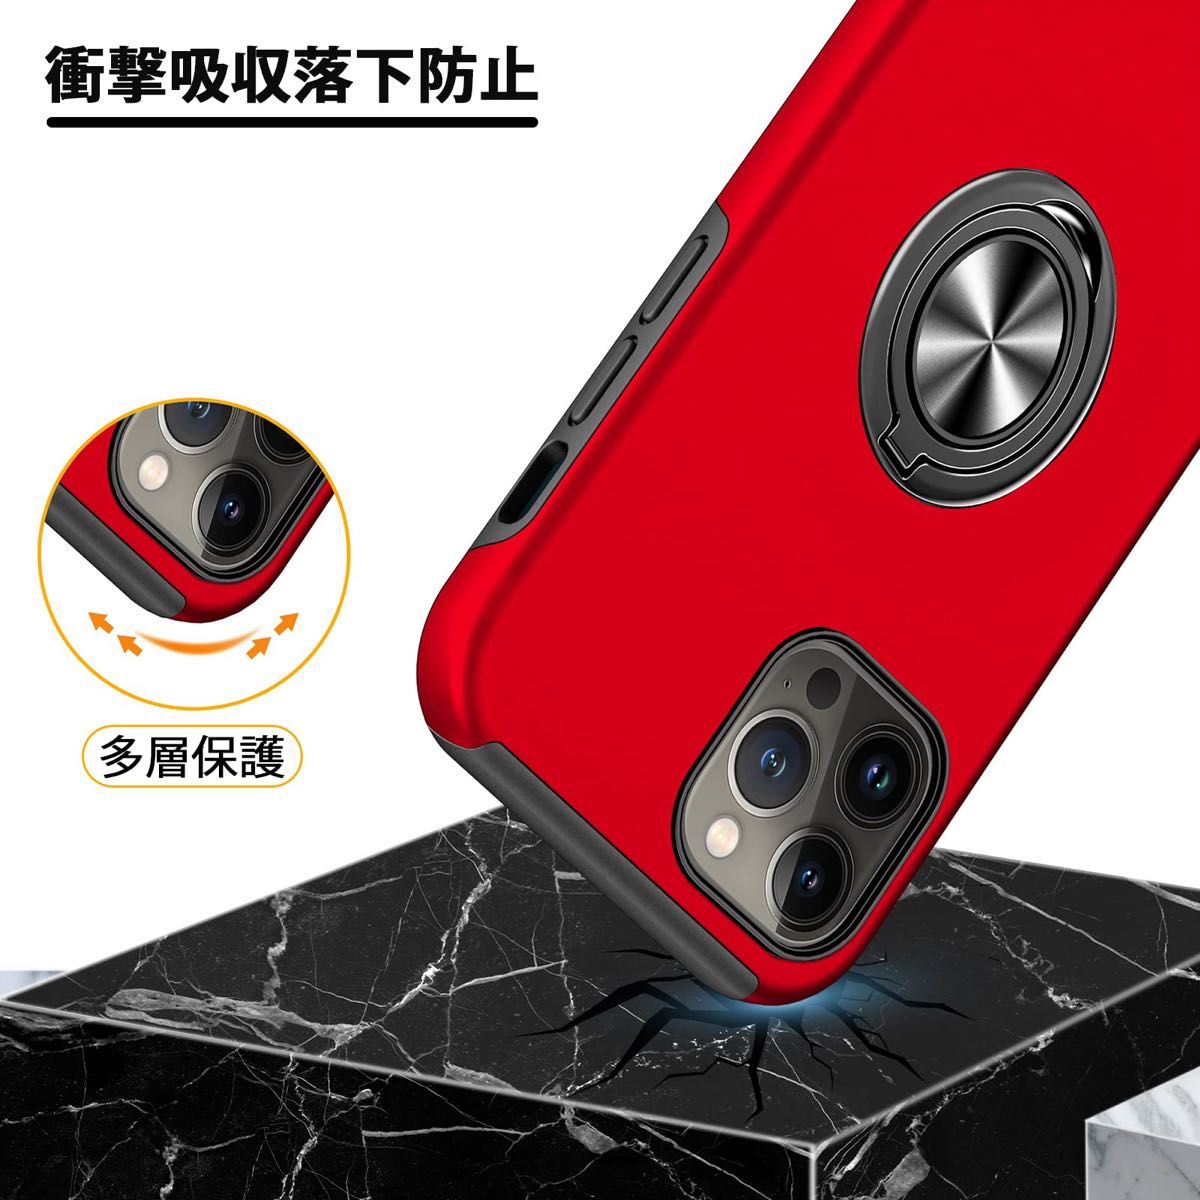 ★オススメ★iphone14 Pro Max ケース リング 耐衝撃 カバー 薄型 tpu 衝撃吸収 指紋防止TPU+PC材質 